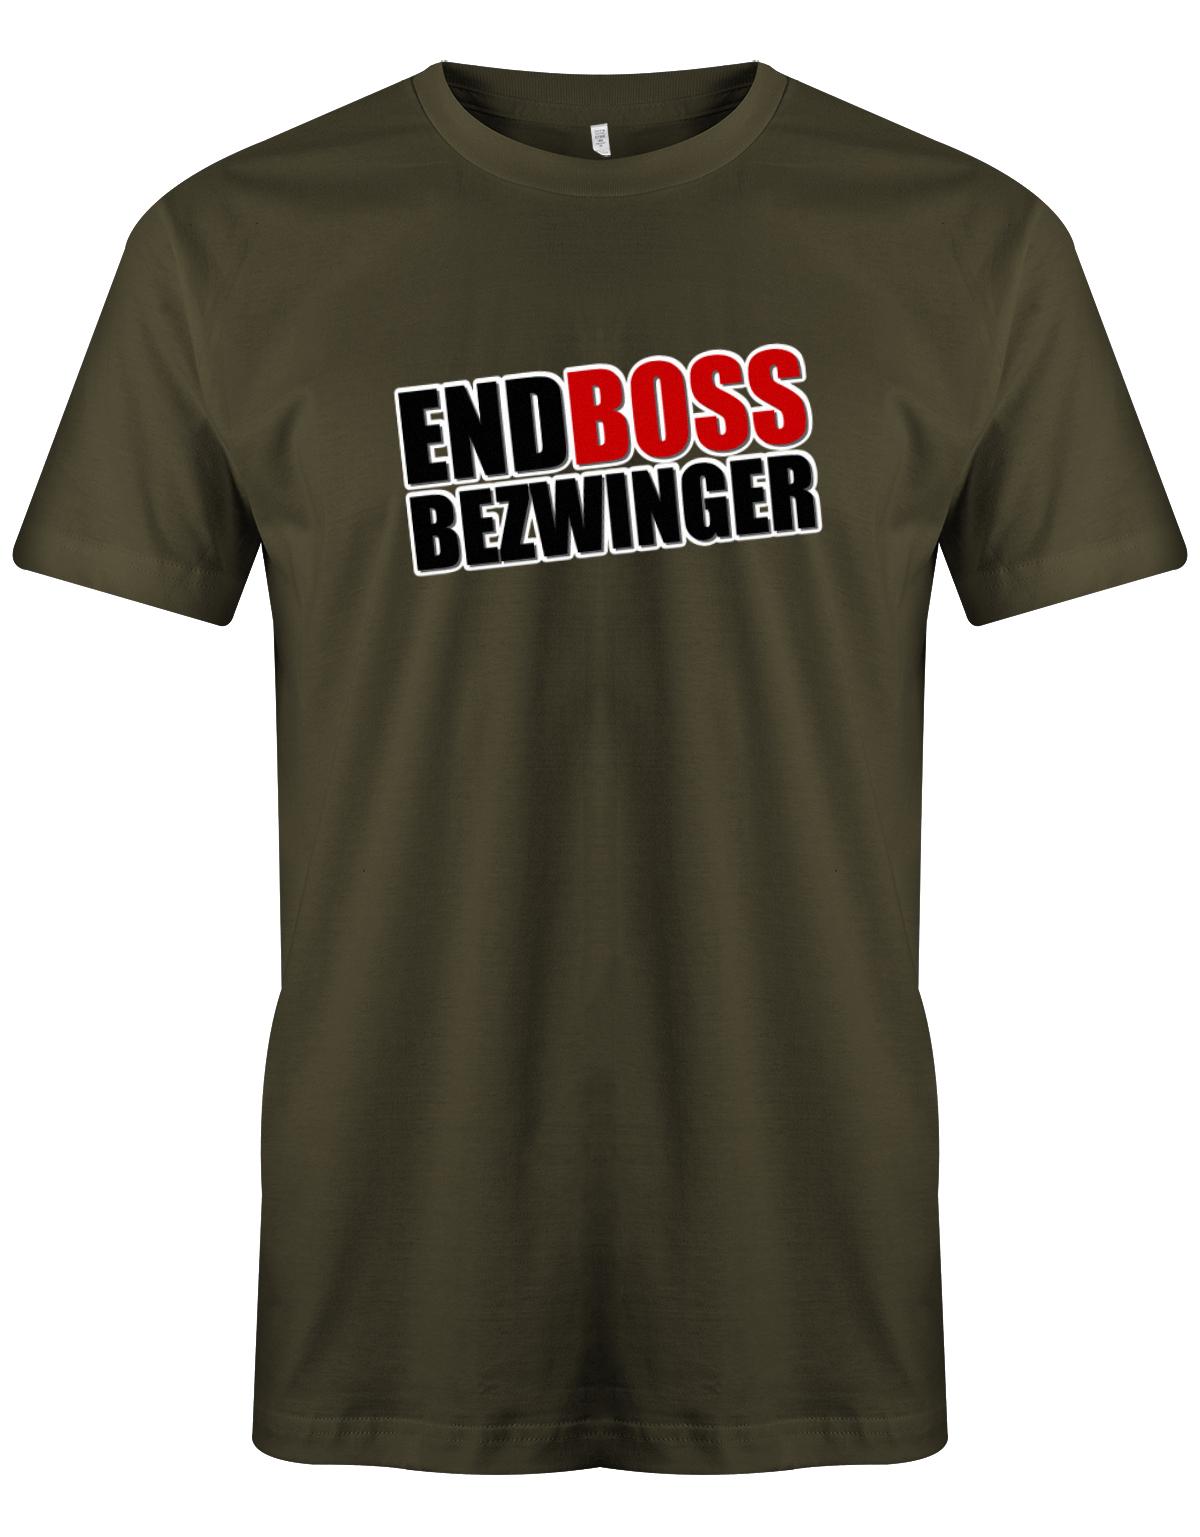 Endboss-Bezwinger-Gamer-Herren-Shirt-Army